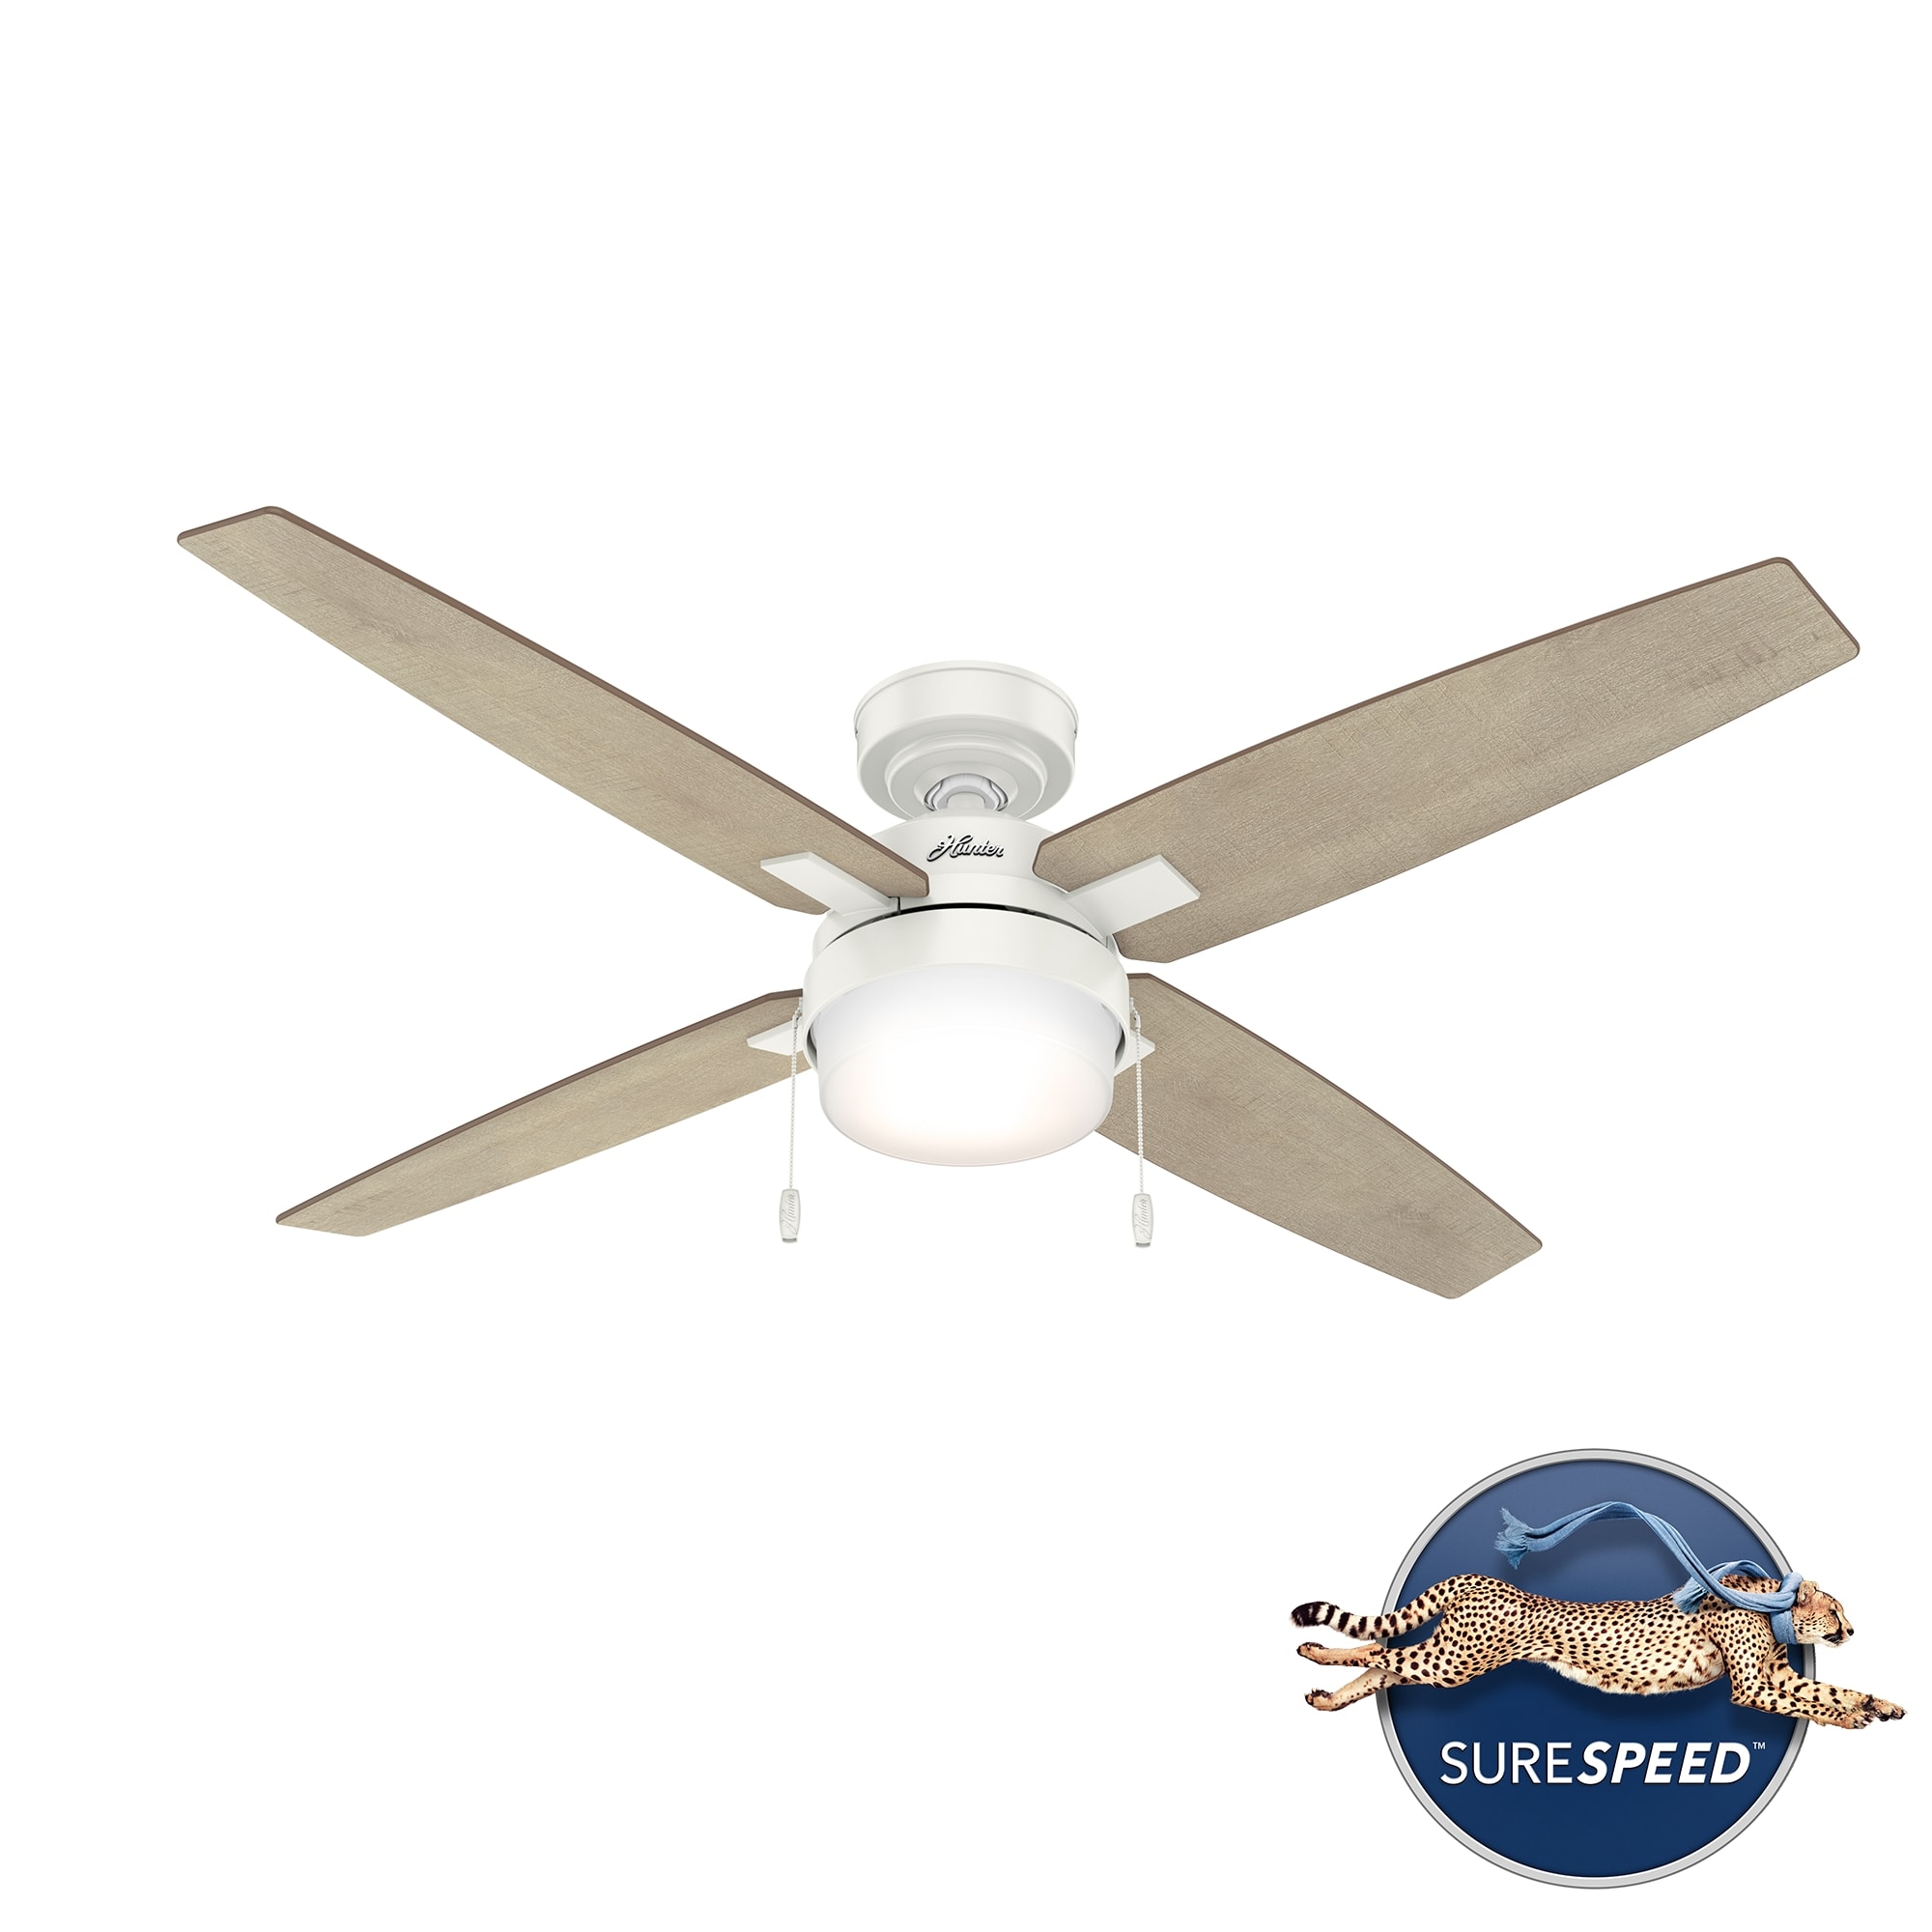 Crossfield ceiling fan in fresh white finish